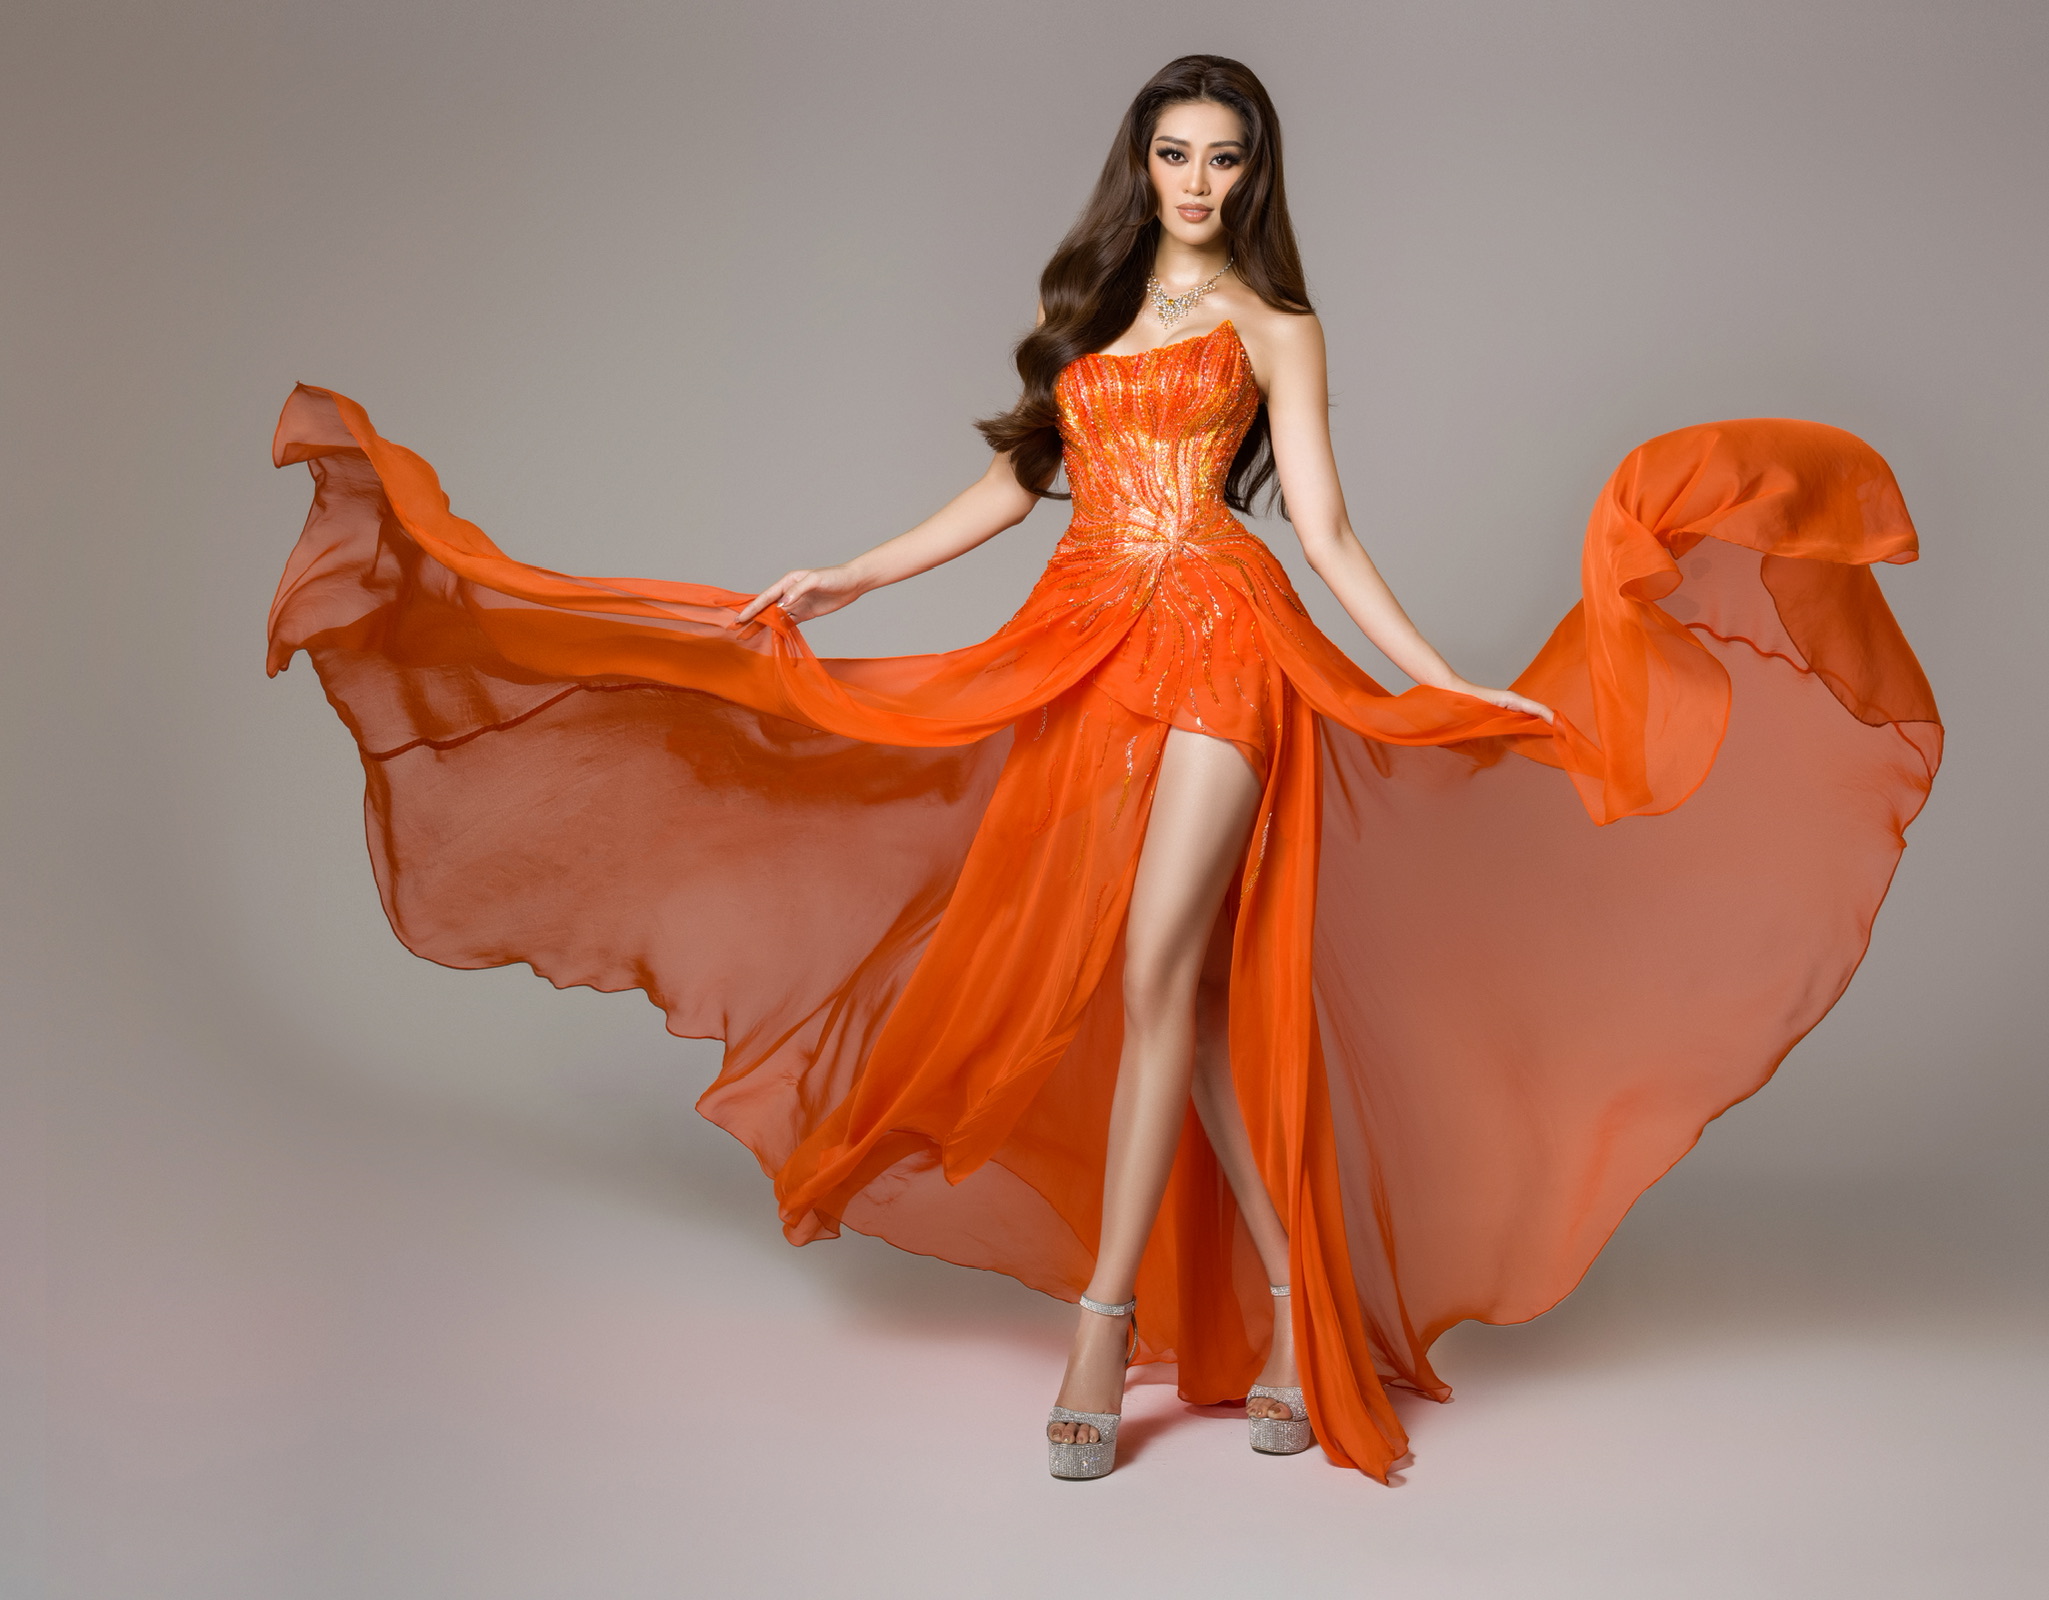 Ý nghĩa chiếc váy cam của hoa hậu Khánh Vân tại bán kết Hoa hậu Hoàn vũ 2020 - Ảnh 9.